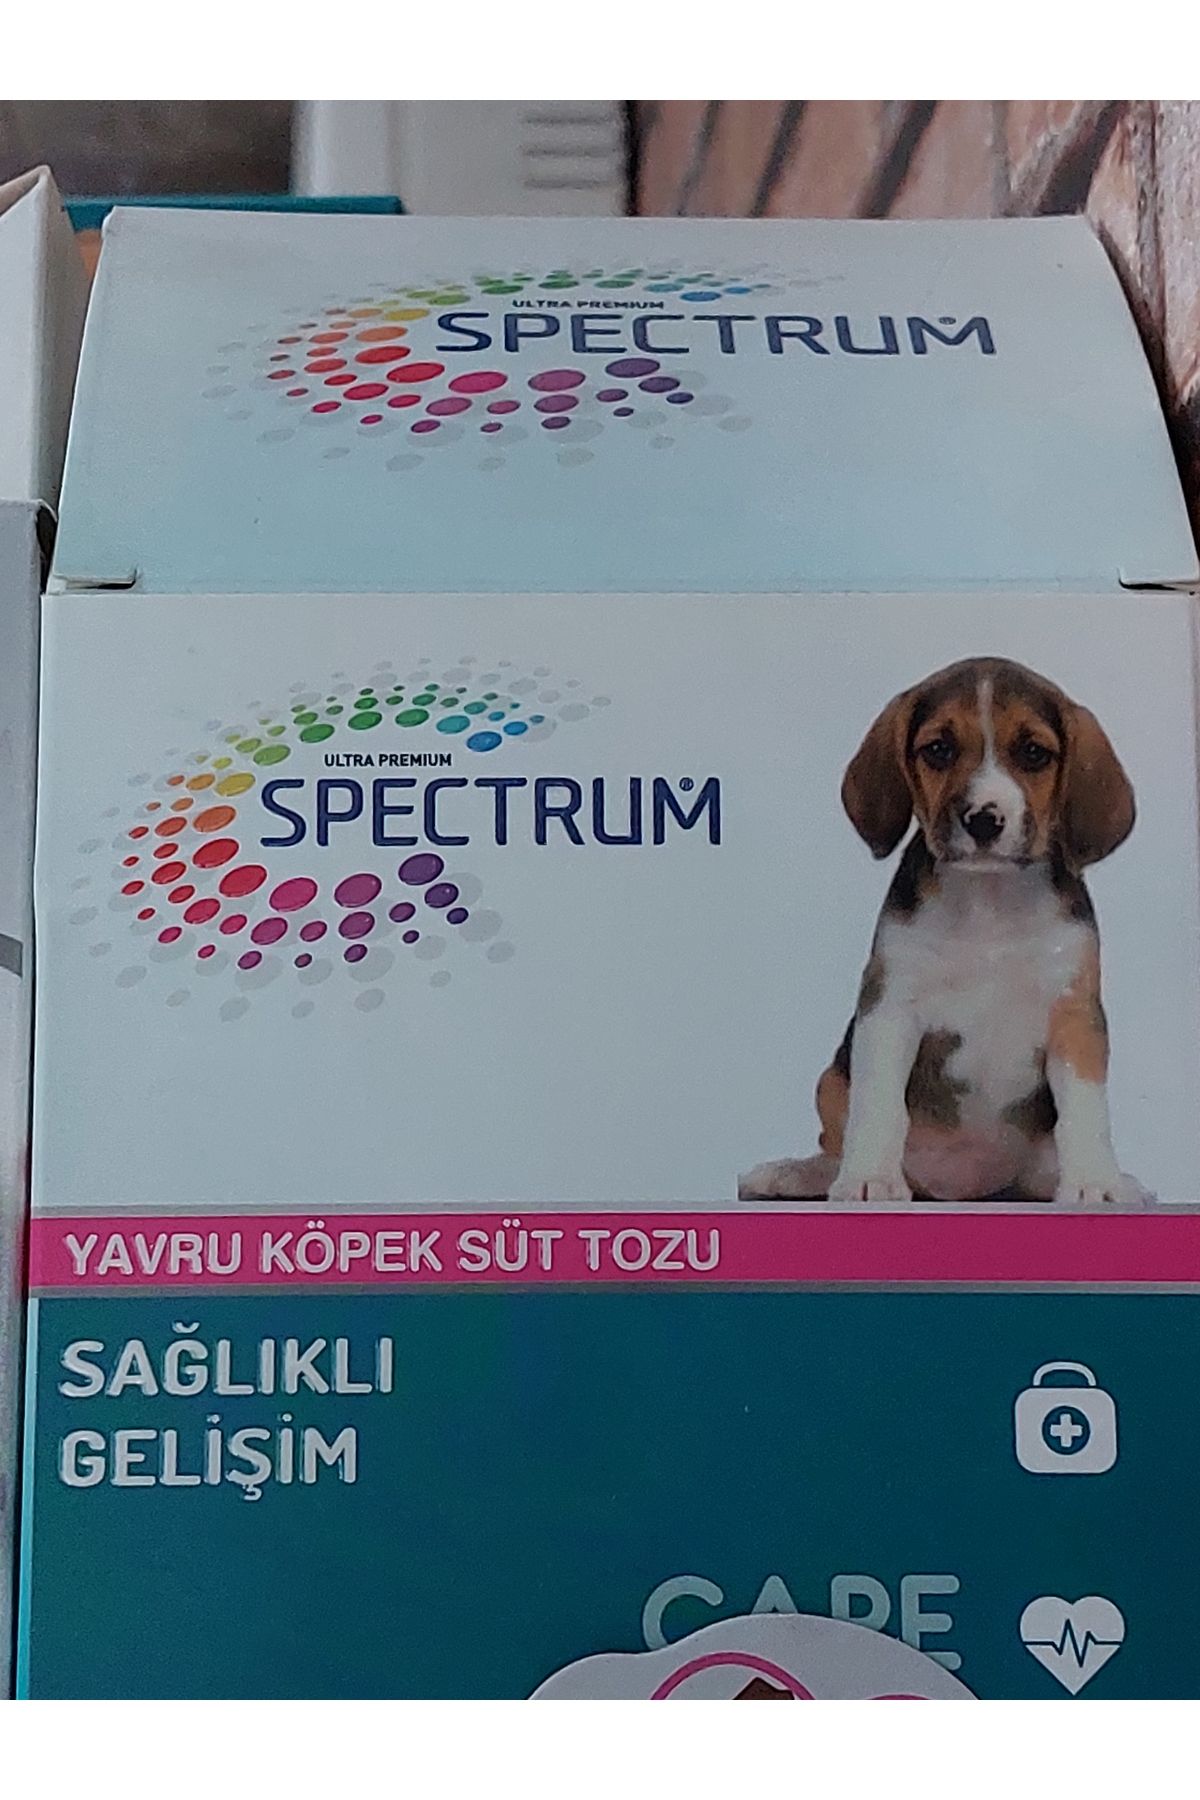 Spectrum yavru köpek süt tozu